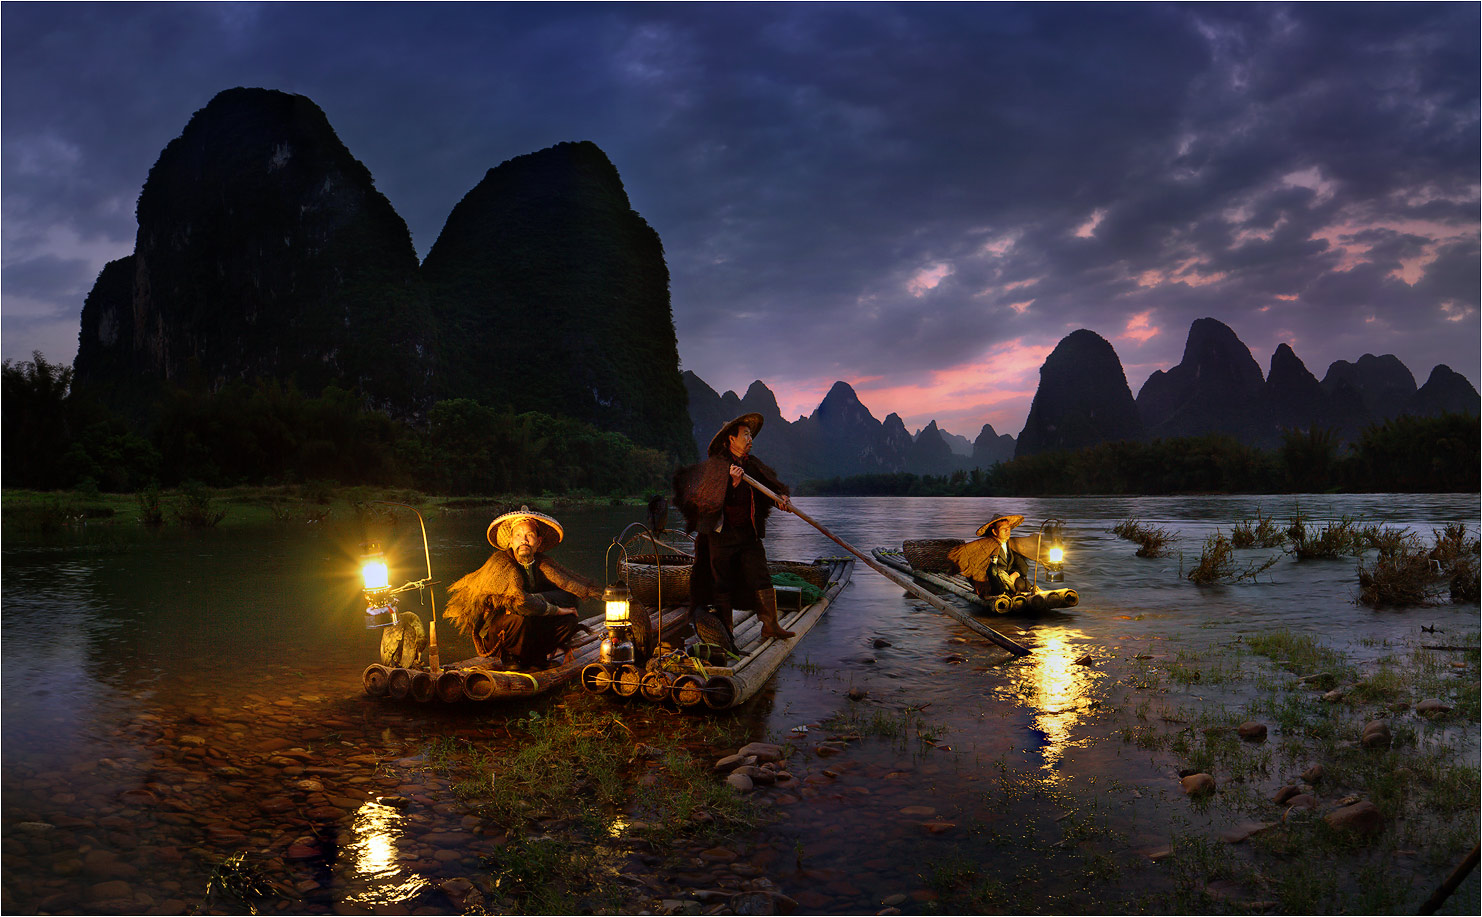 Night Fishing by Yury Pustovoy